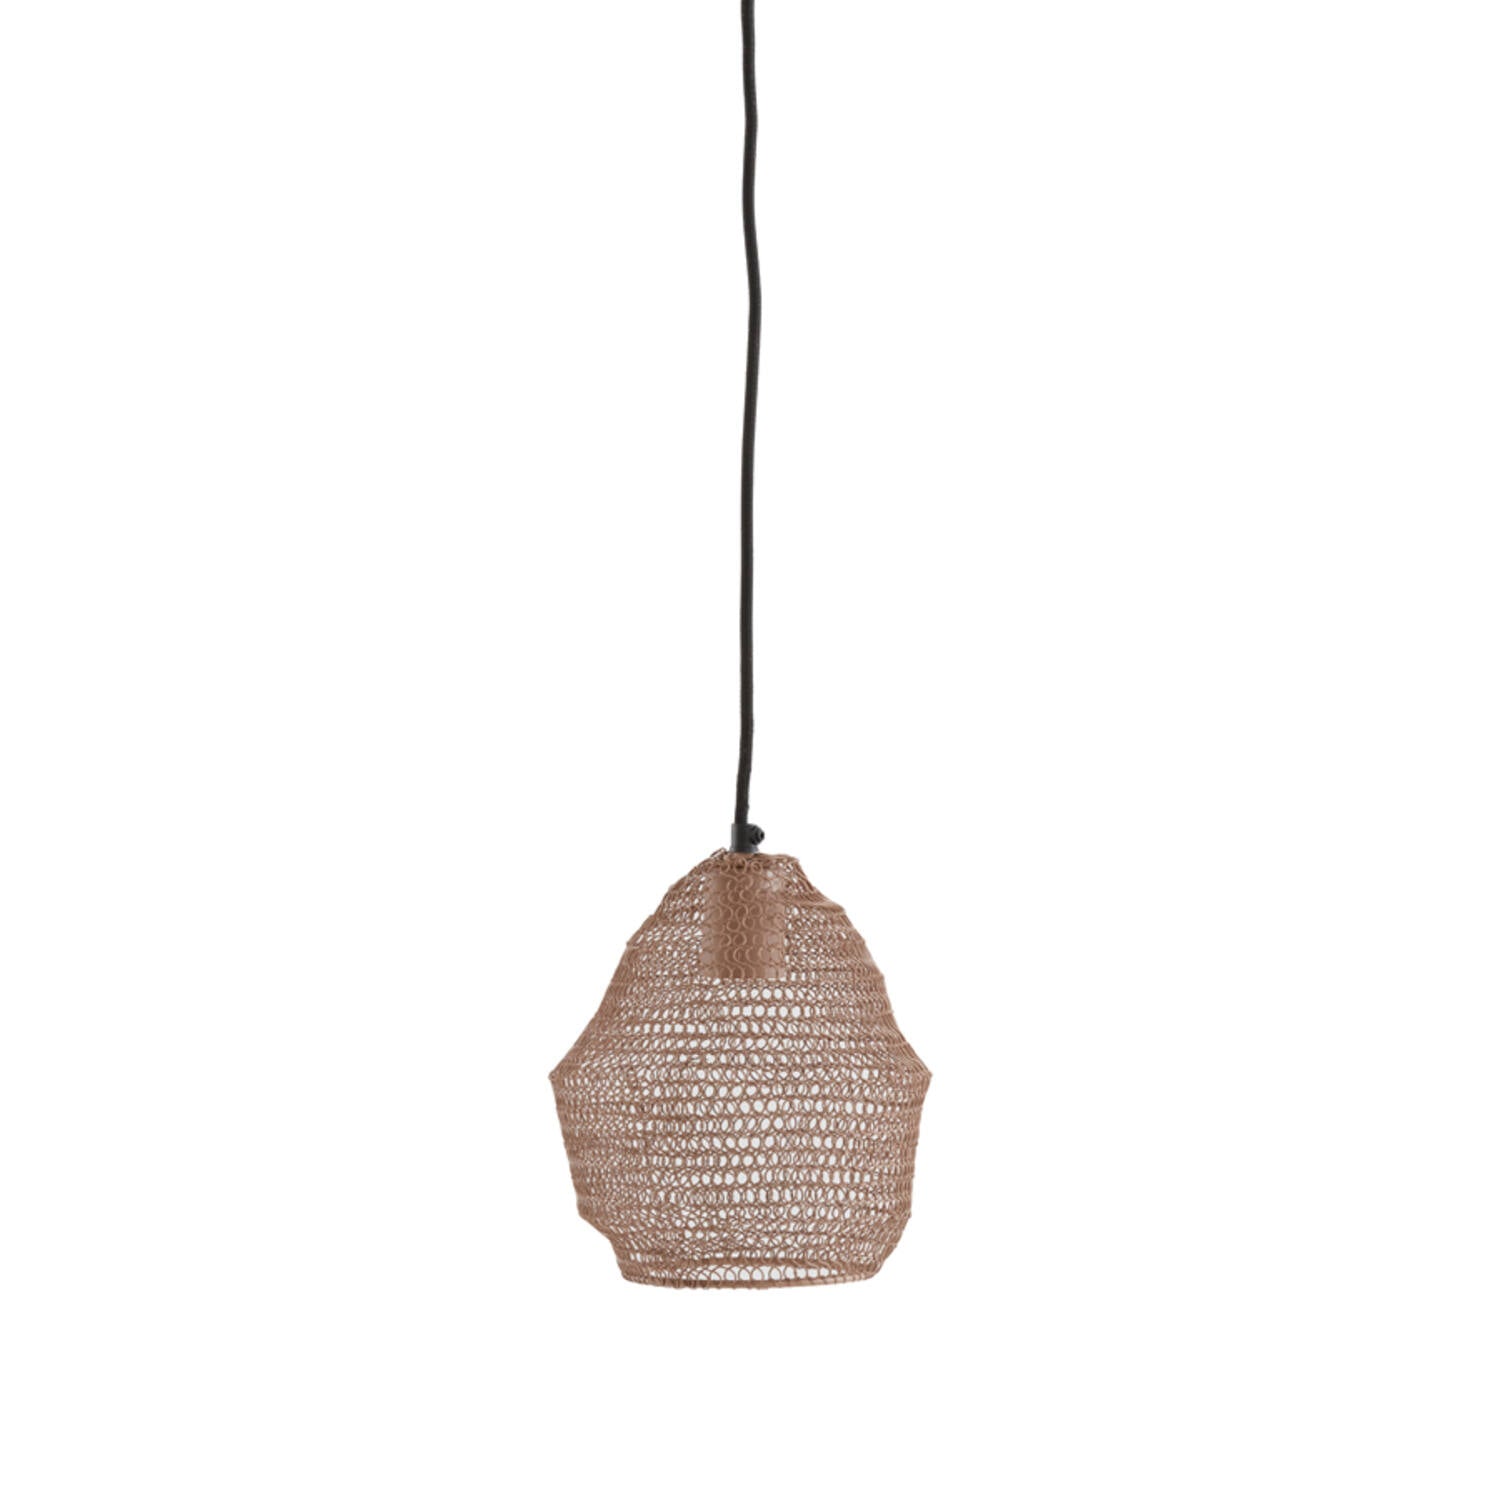 Nola Hanging Lamp - Shiny Black/Antique Bronze/Light Gold Finish